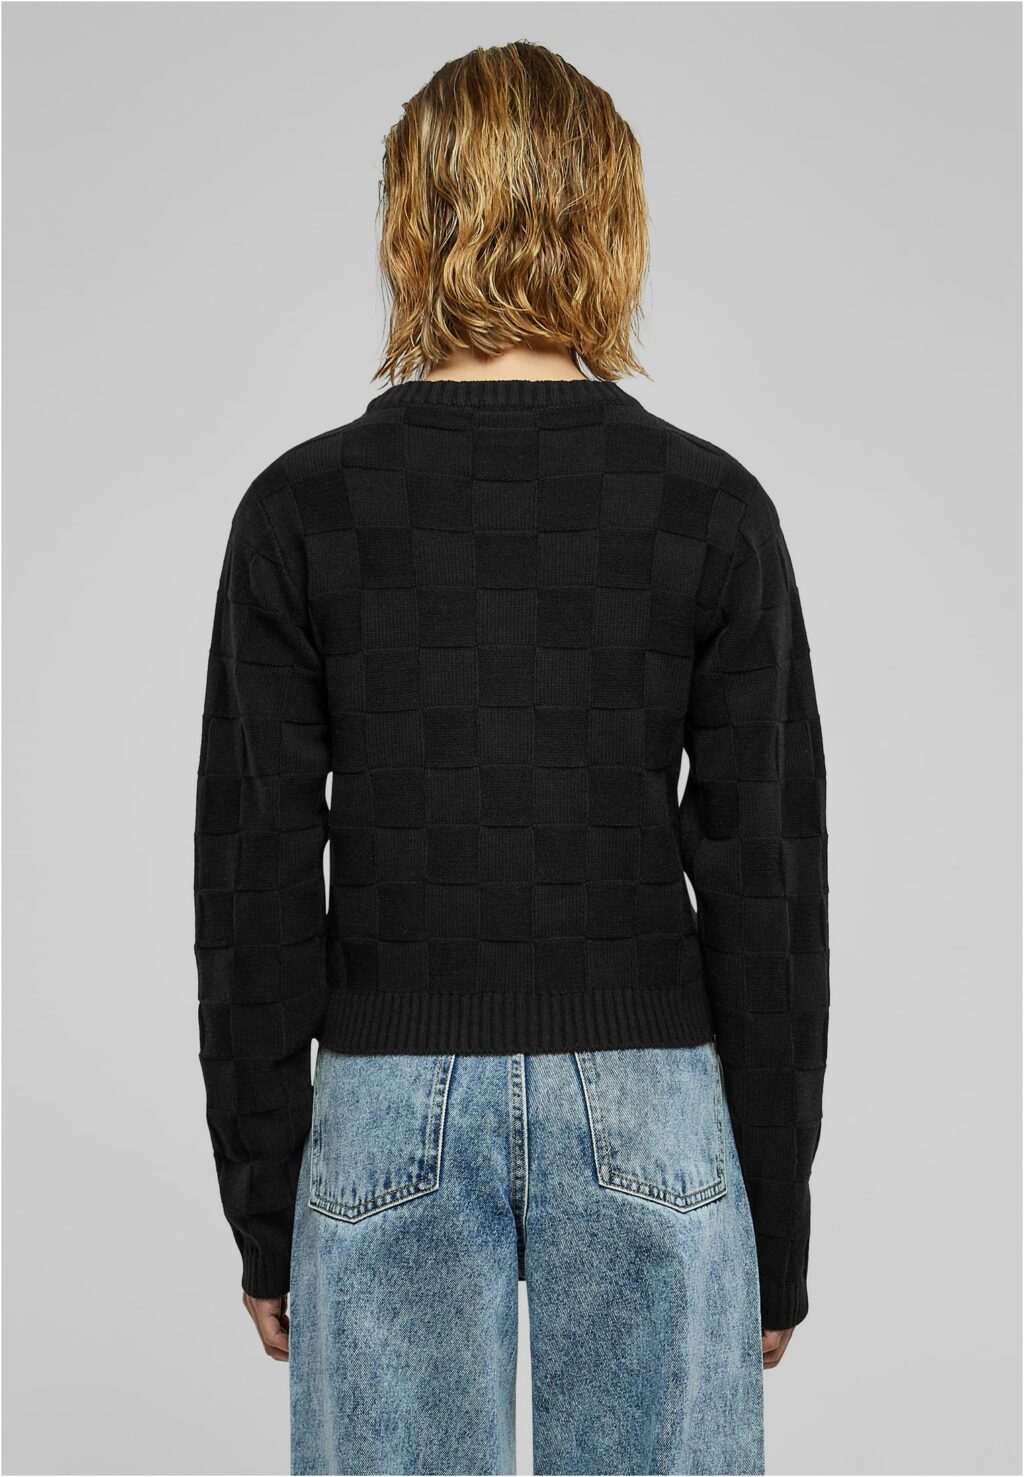 Urban Classics Ladies Check Knit Sweater black TB6138